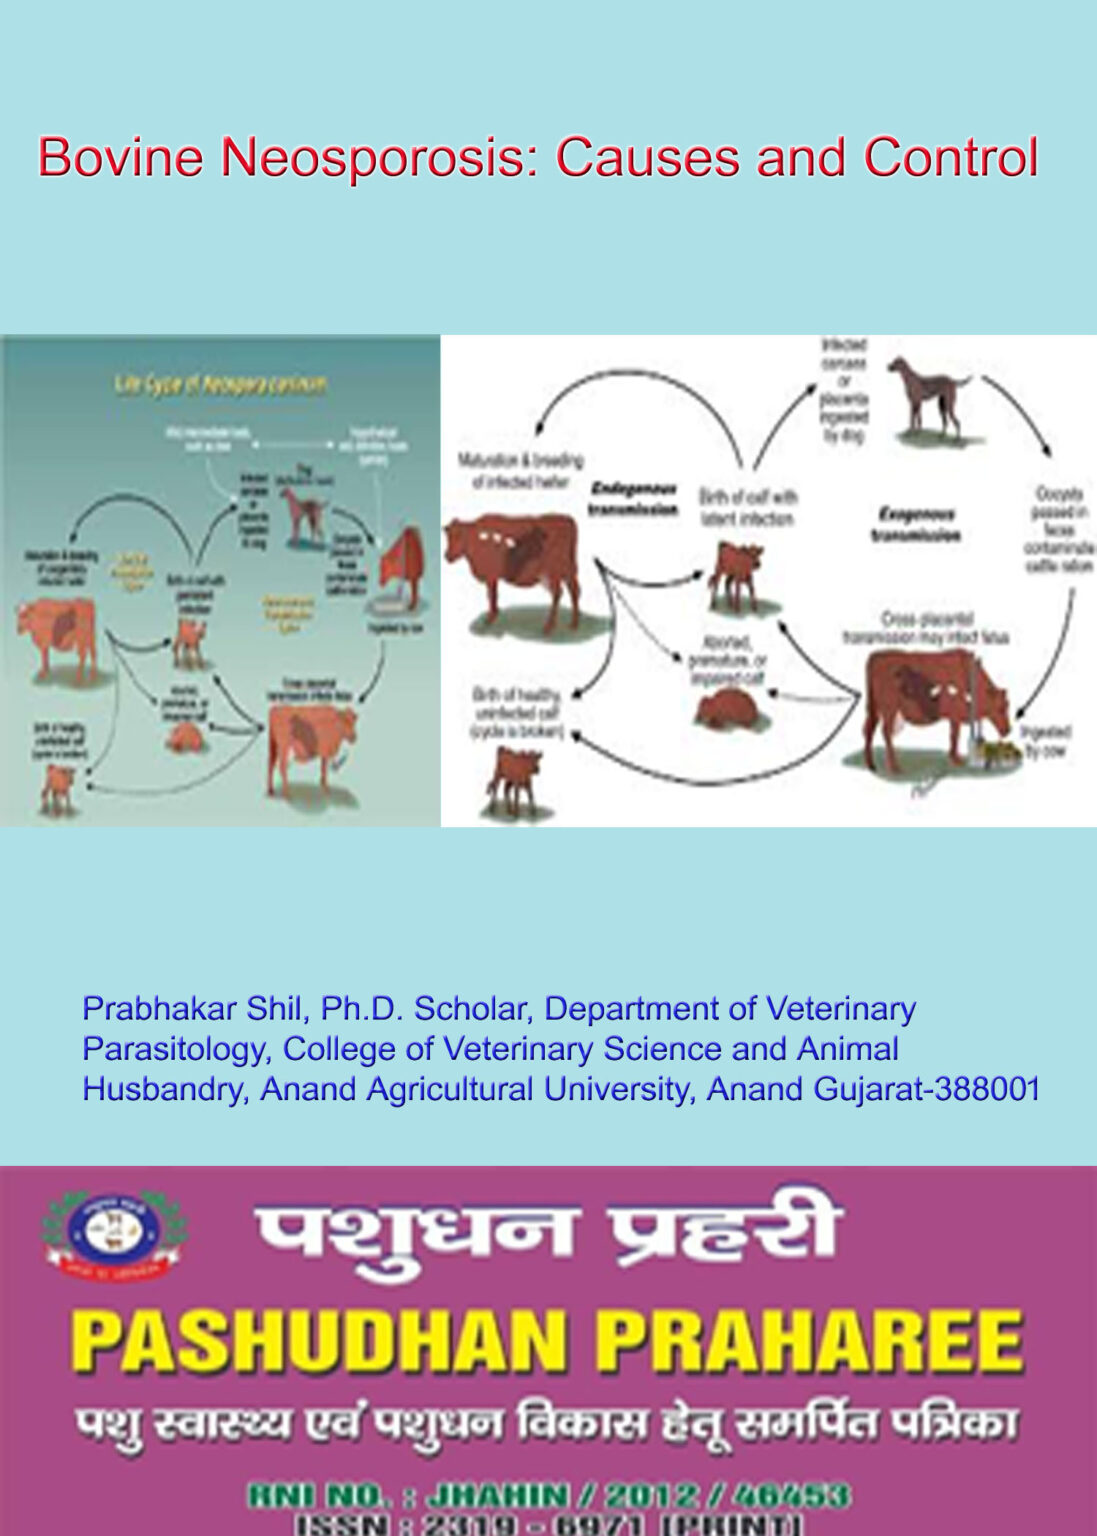 Bovine Neosporosis Causes and Control | Pashudhan praharee